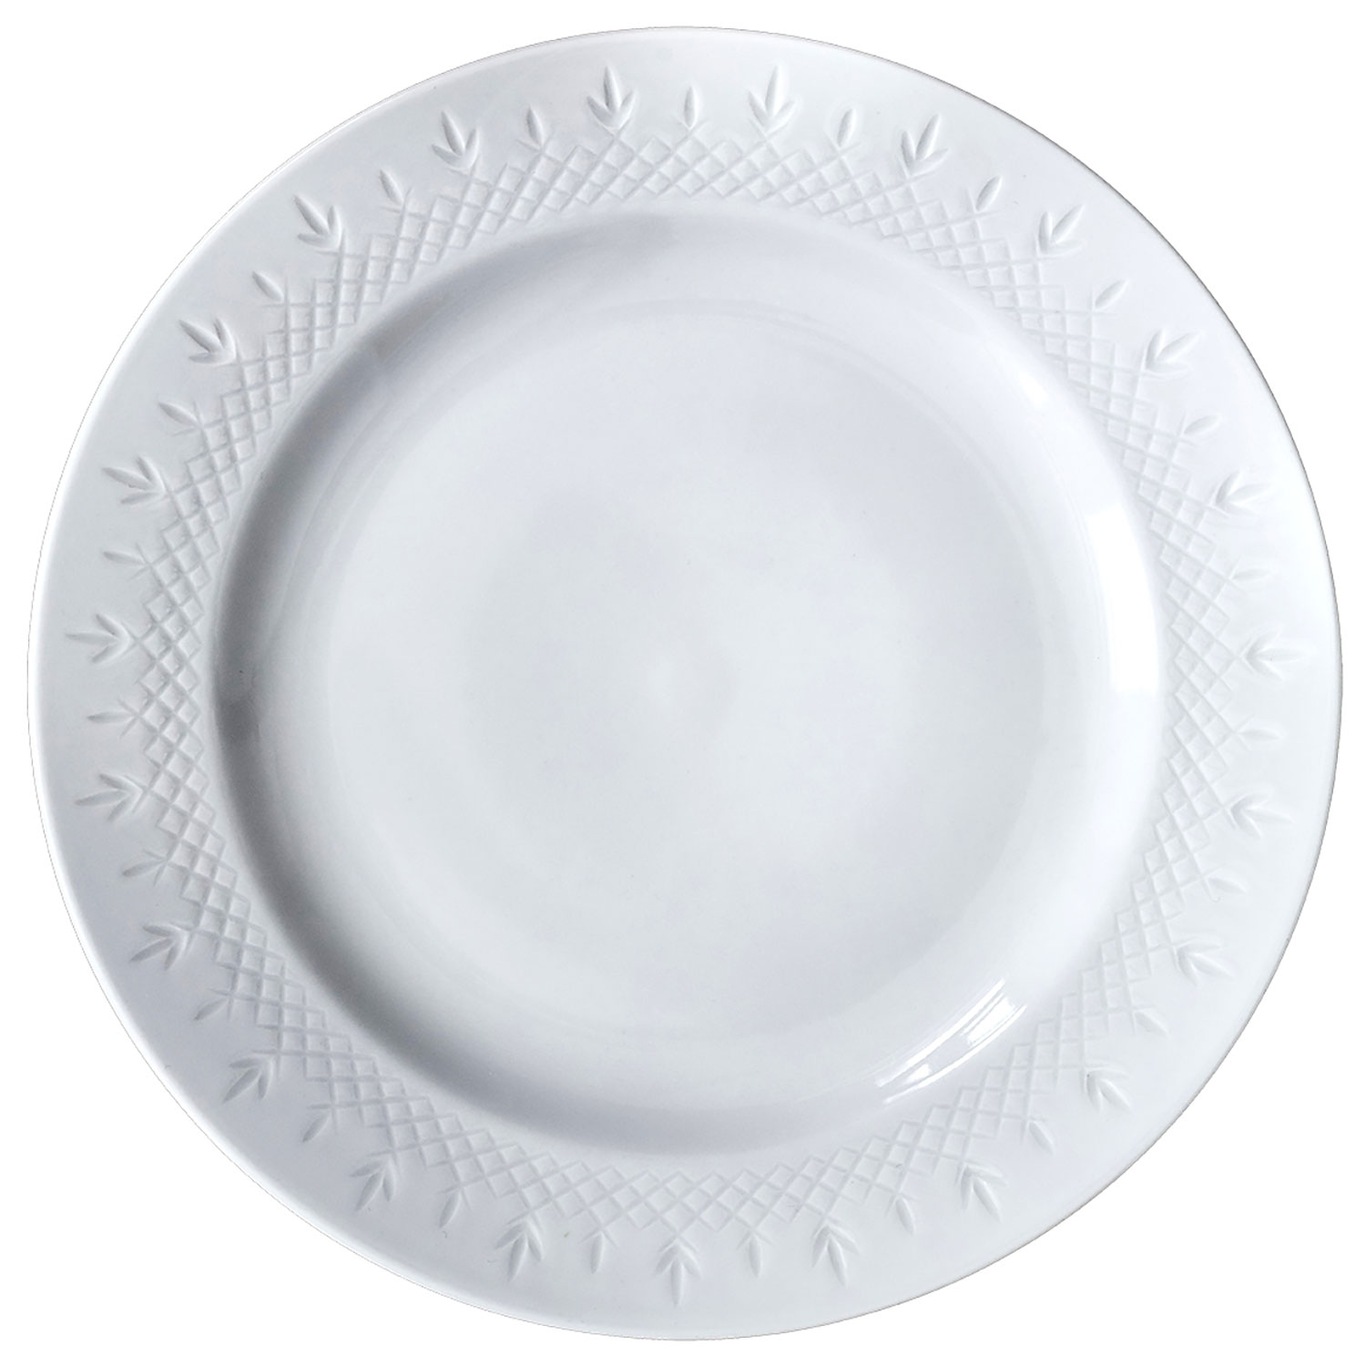 Crispy Dinner Plate, 27 cm